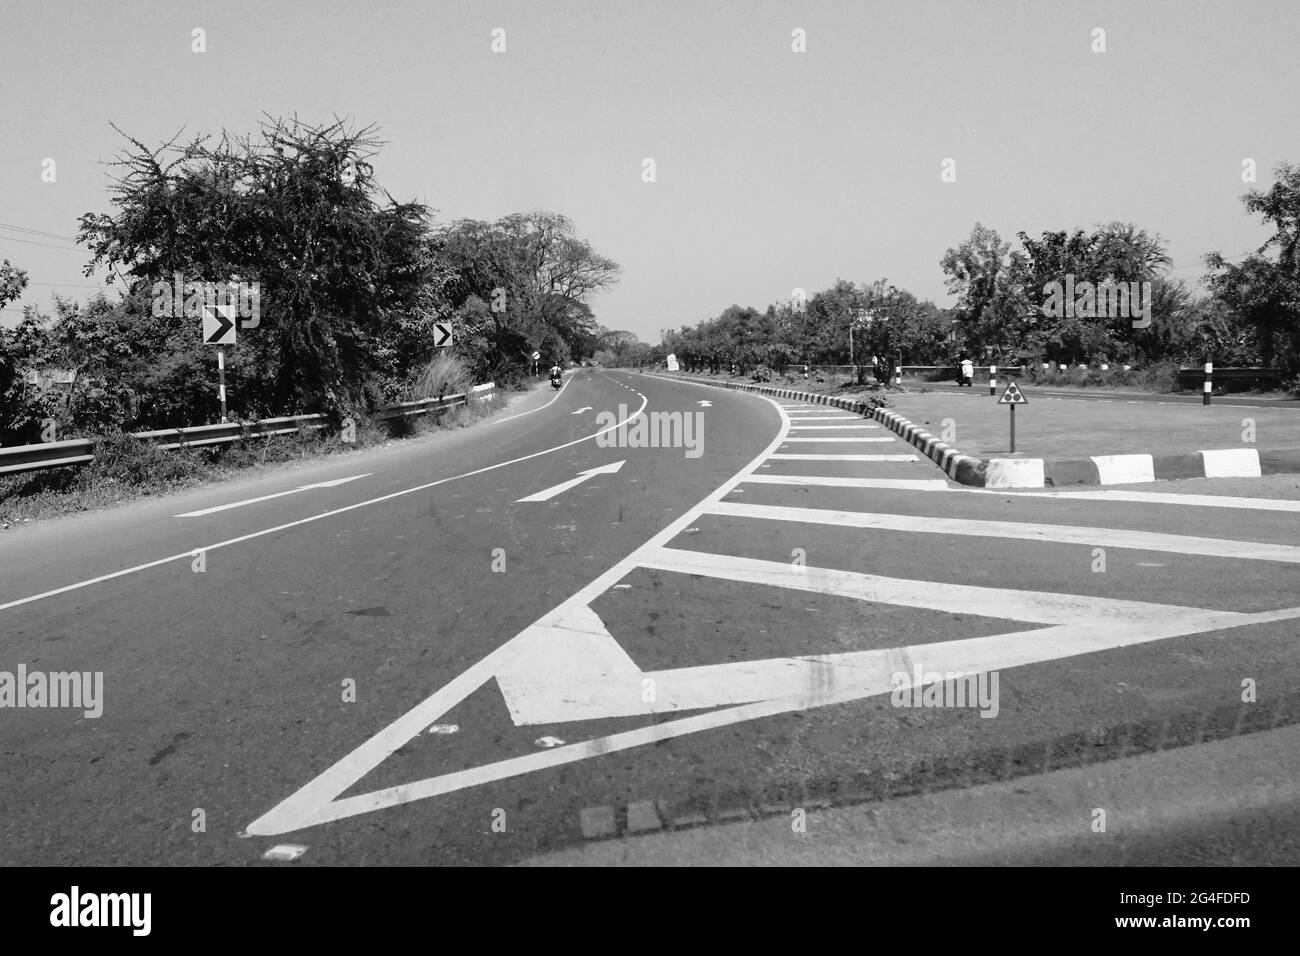 Las marcas de color blanco en la carretera india, imagen en blanco y negro tomada durante el día. Foto de stock